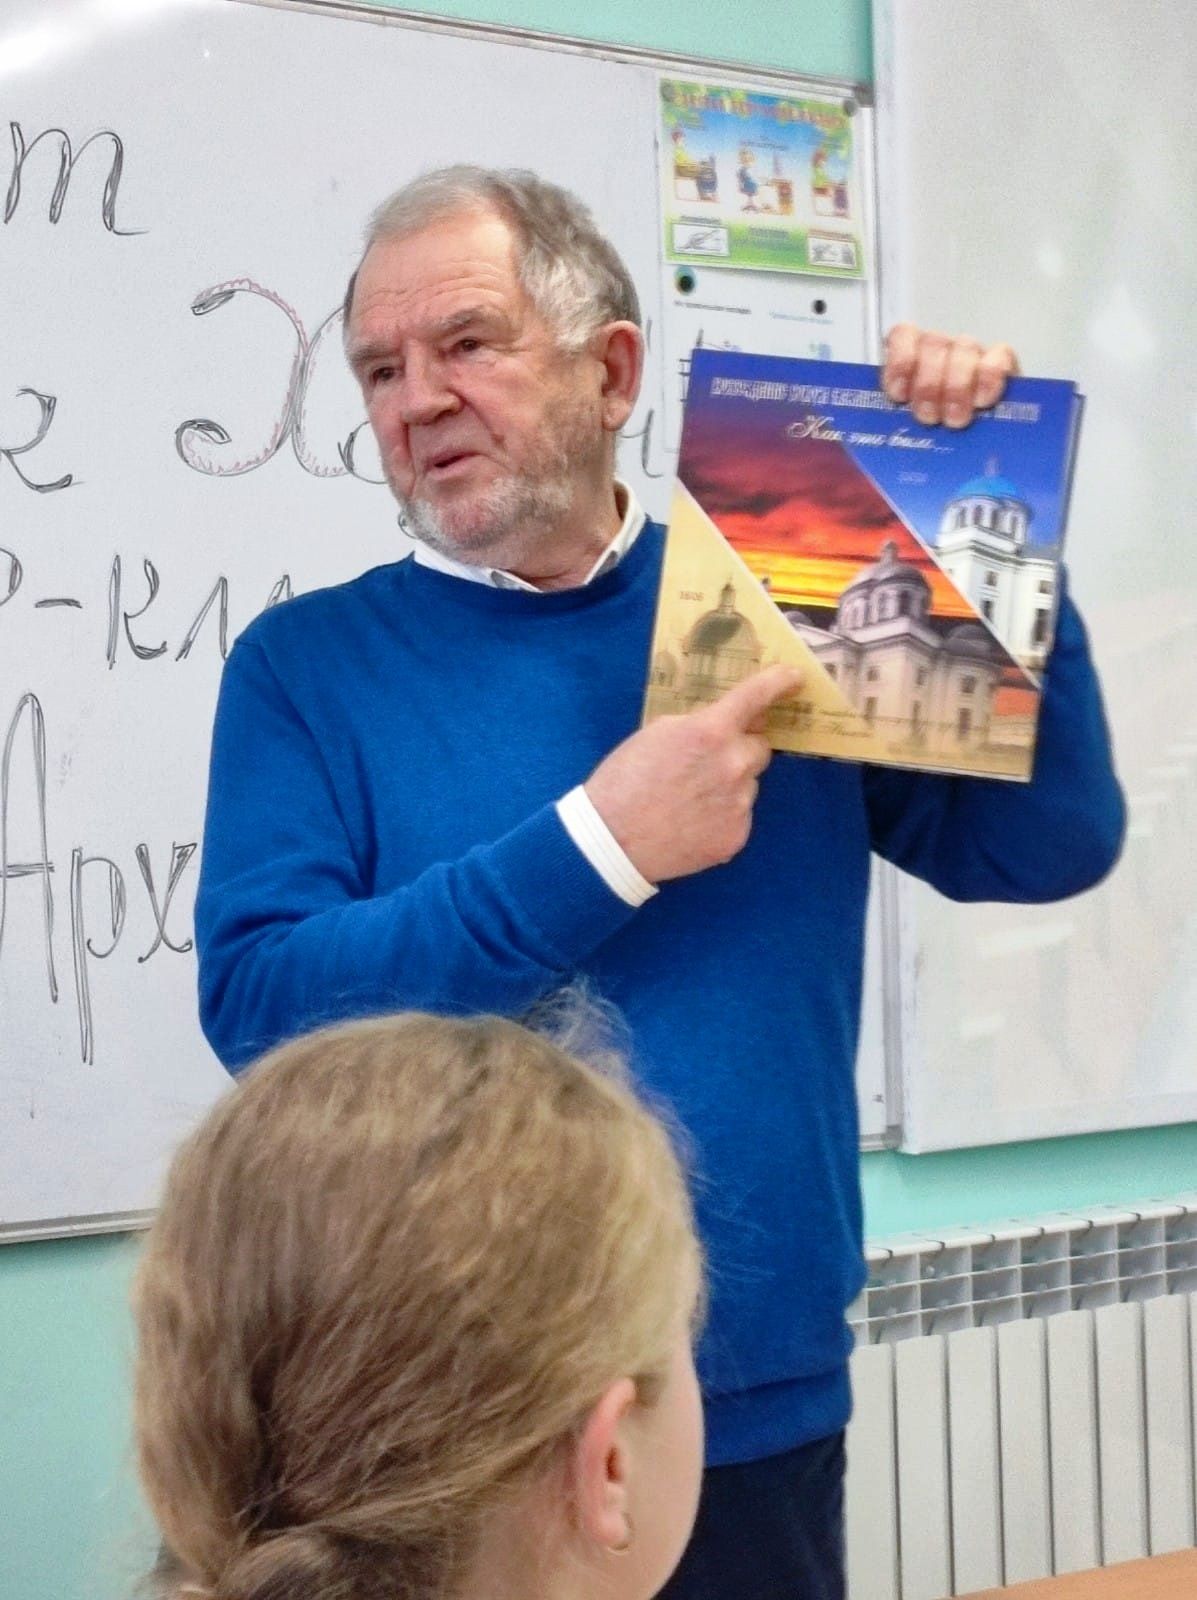 О чем говорил заслуженный архитектор России на мастер-классе в сельской школе